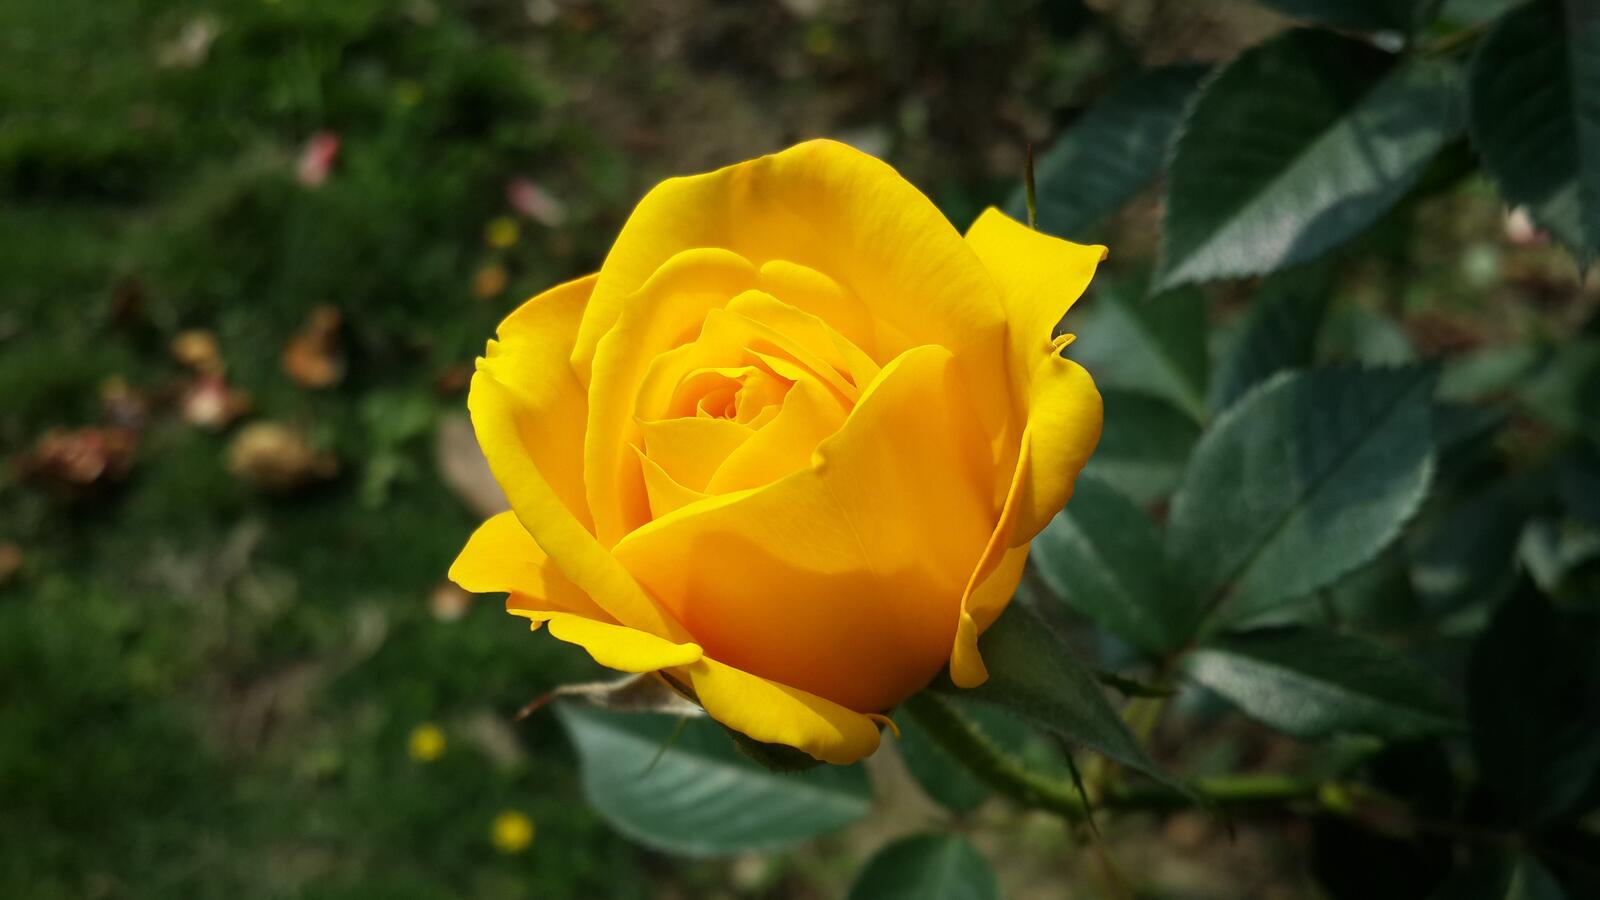 Free photo A single beautiful yellow rose